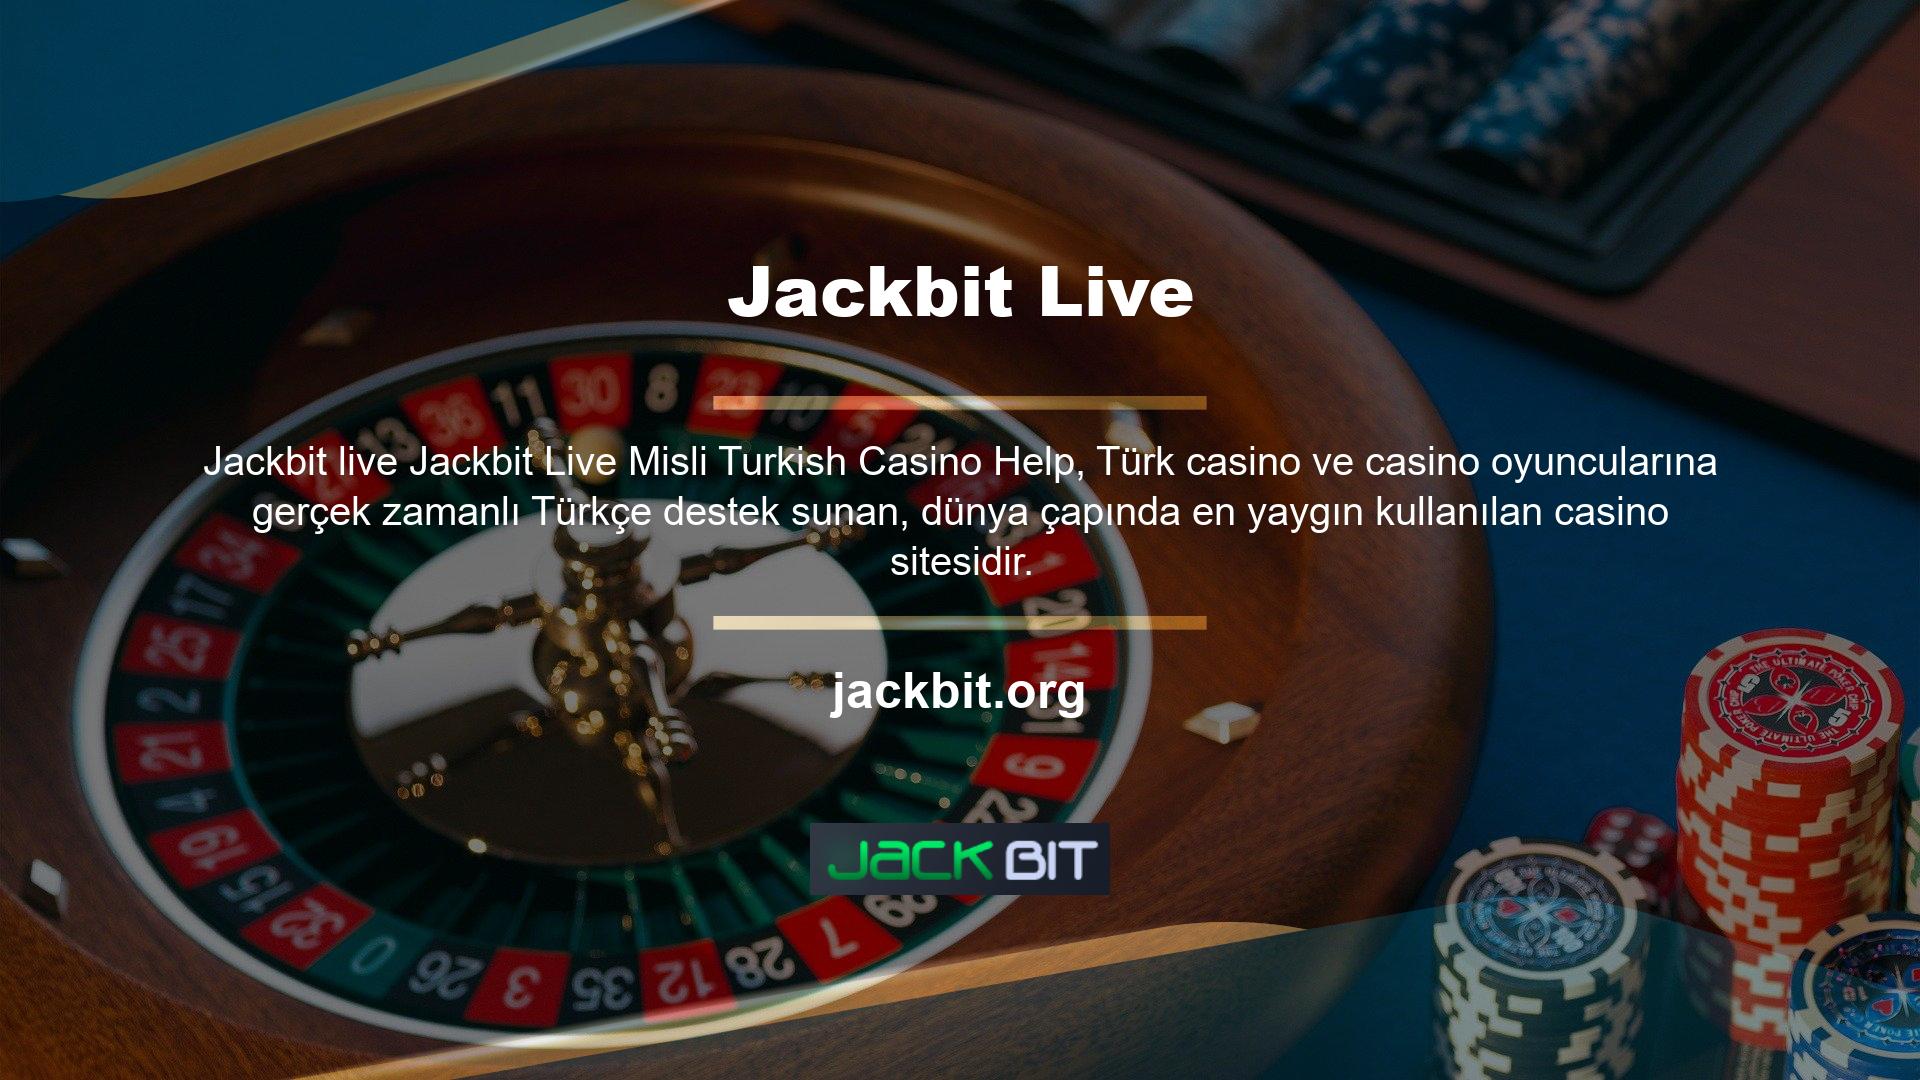 Jackbit casino oyunlarına ilişkin tüm giriş sorularını Türkçe olarak burada bulabilirsinizBir dizi olağanüstü ruh hali panosu, çeşitli oyun türleri ve çok sayıda bonus bahis, casino oyunlarında kazanmayı mümkün kılıyor